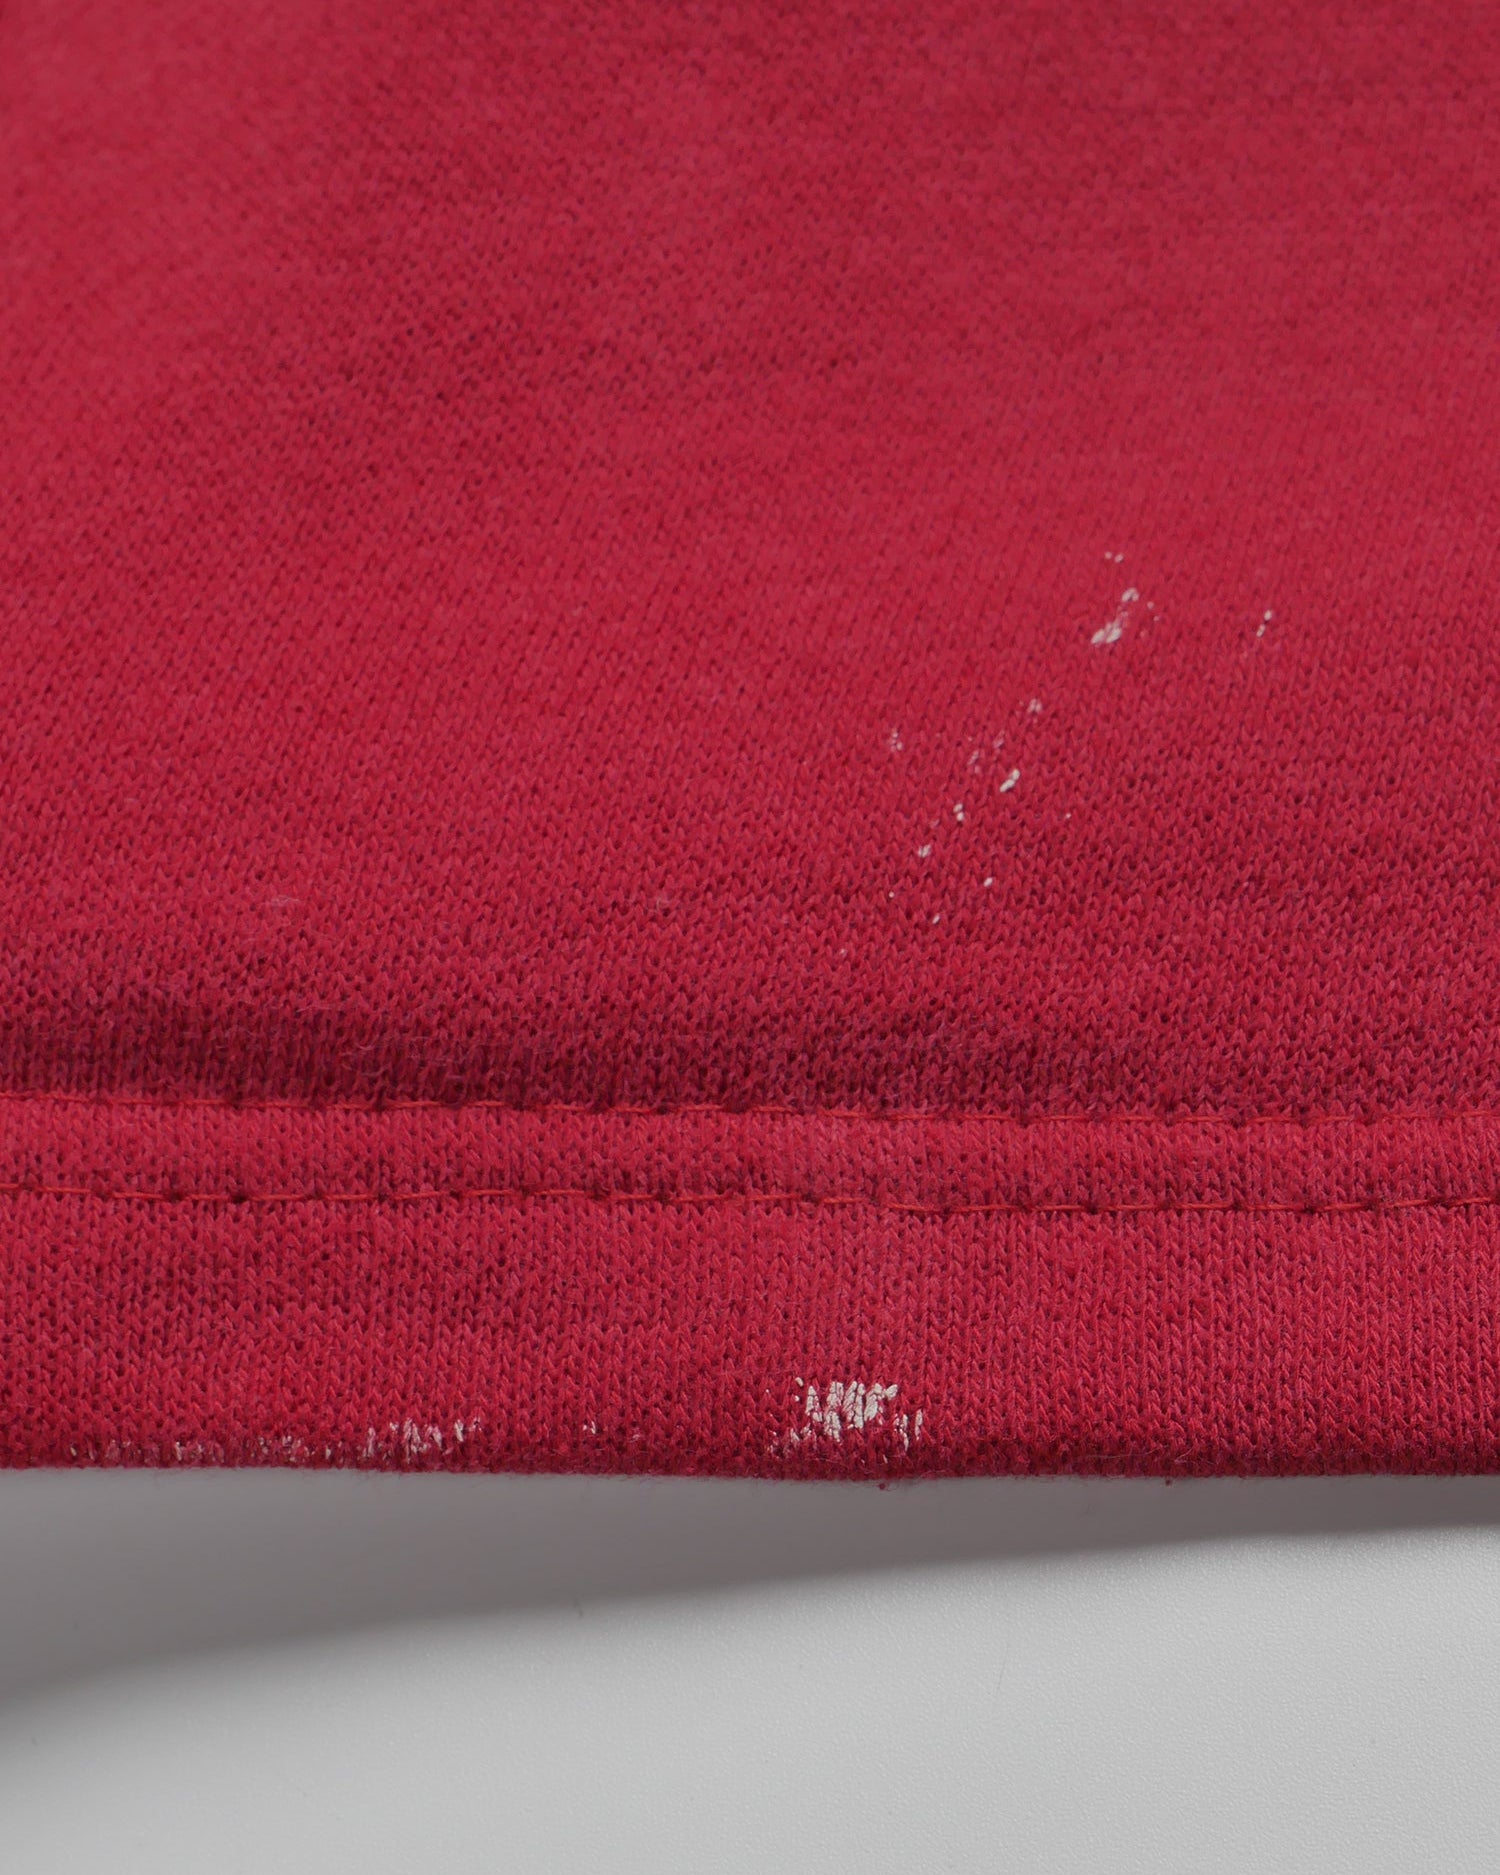 Adidas rot Langarm T-Shirt - Peeces